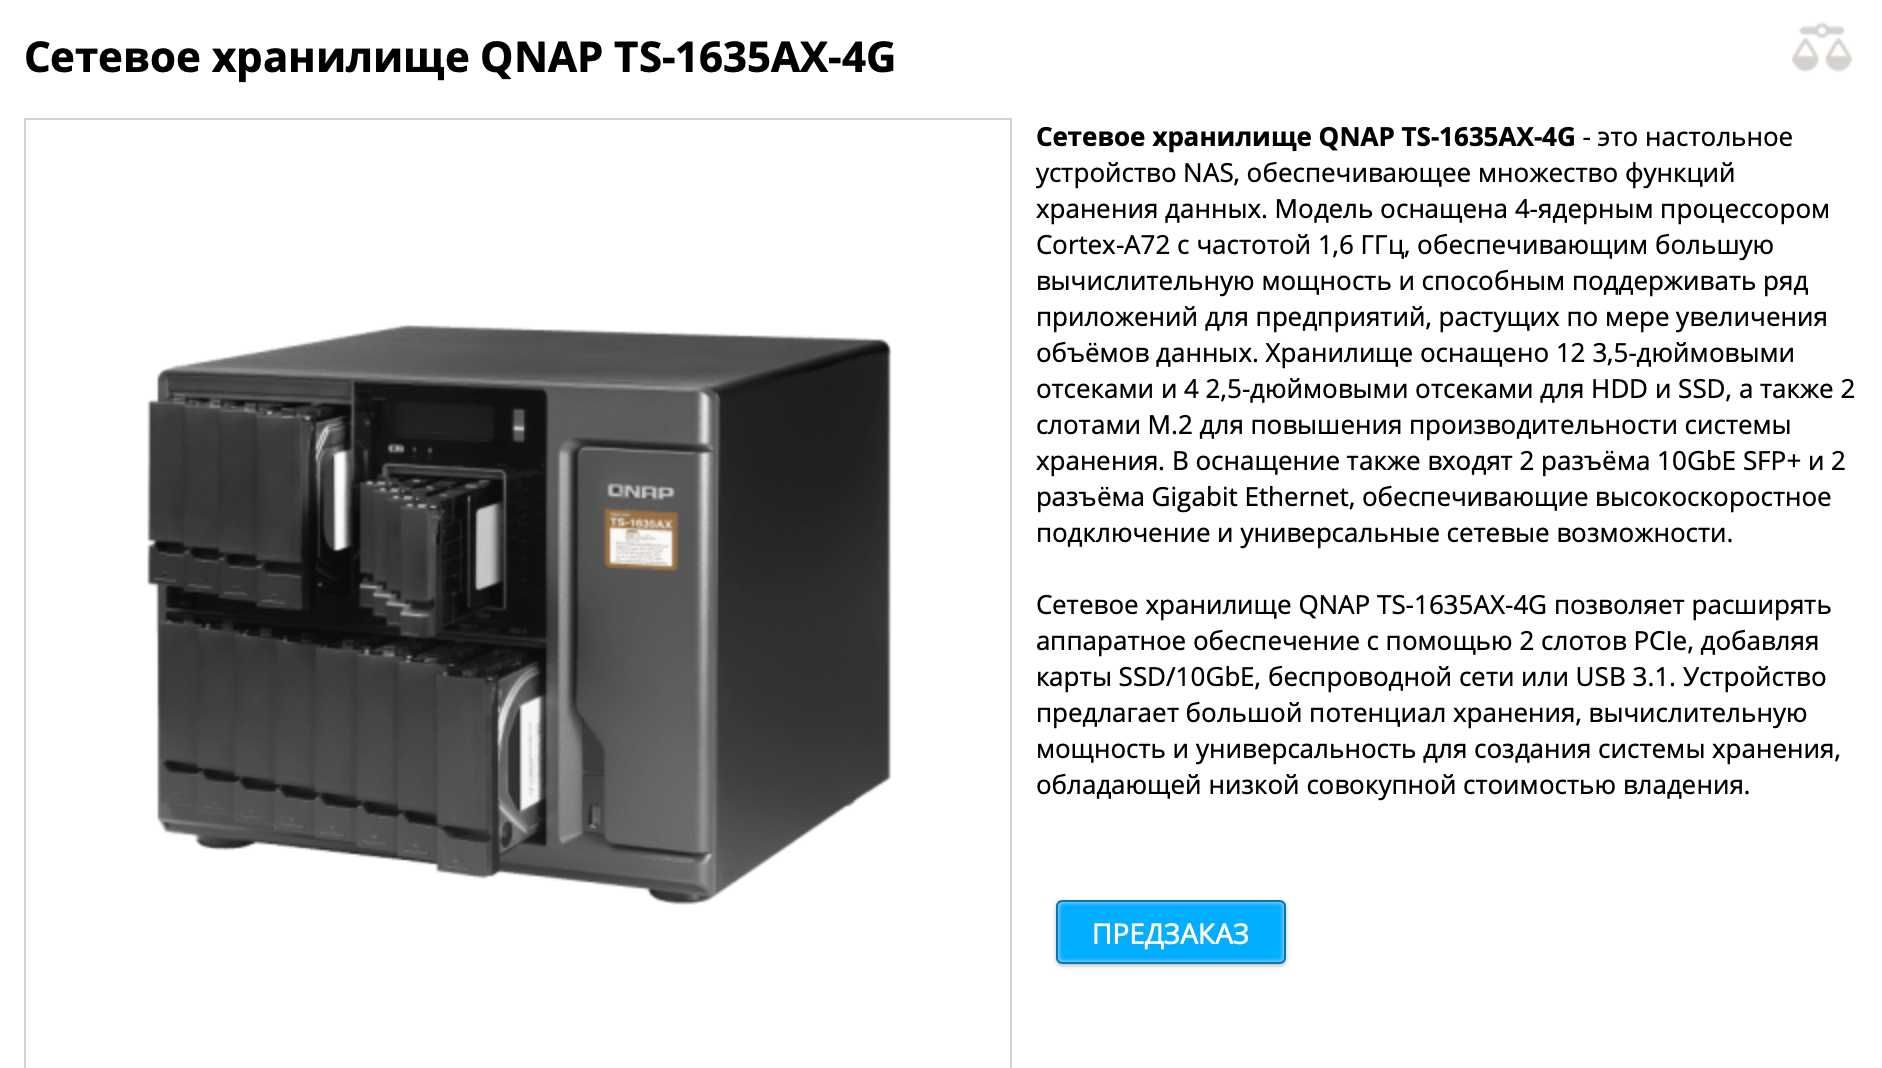 Сетевое хранилище QNAP TS-1635AX-4G